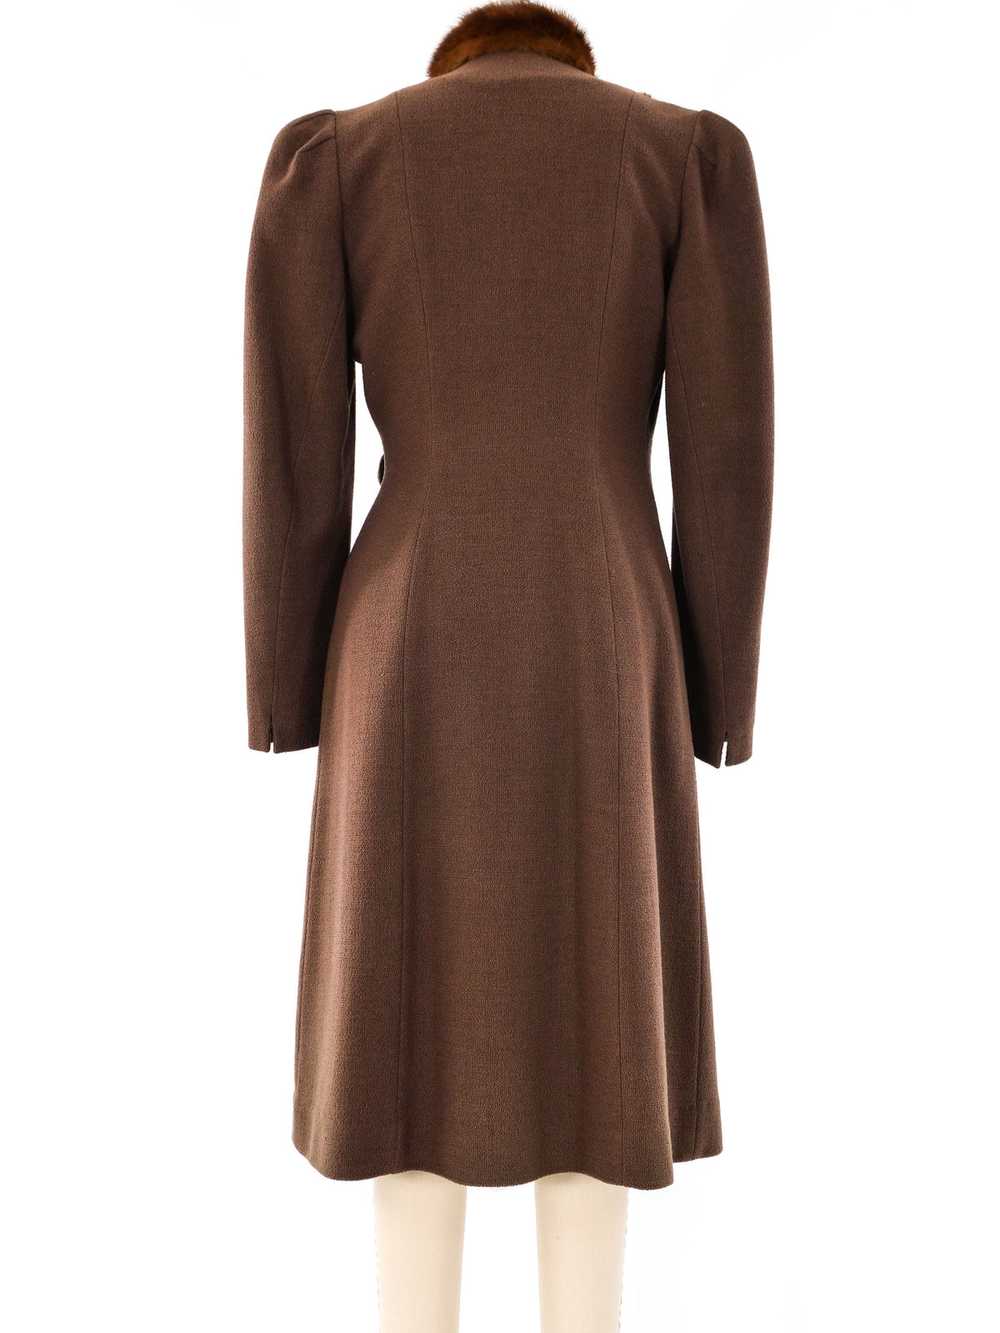 1940's Brown Coat With Fur Trim Bib - image 4